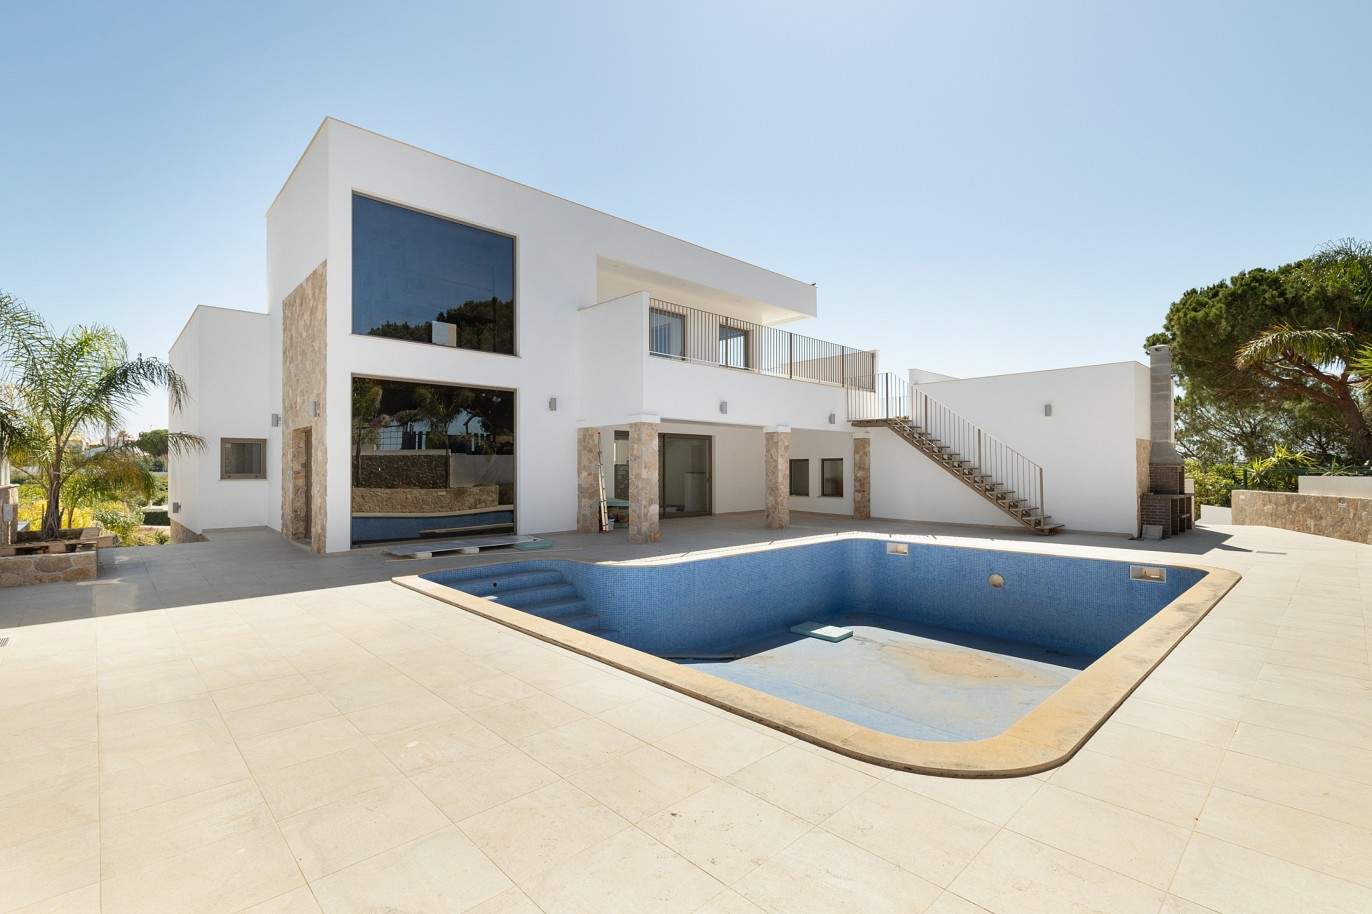 Villa de 5 dormitorios, de nueva construcción, en venta en Albufeira, Algarve_203248